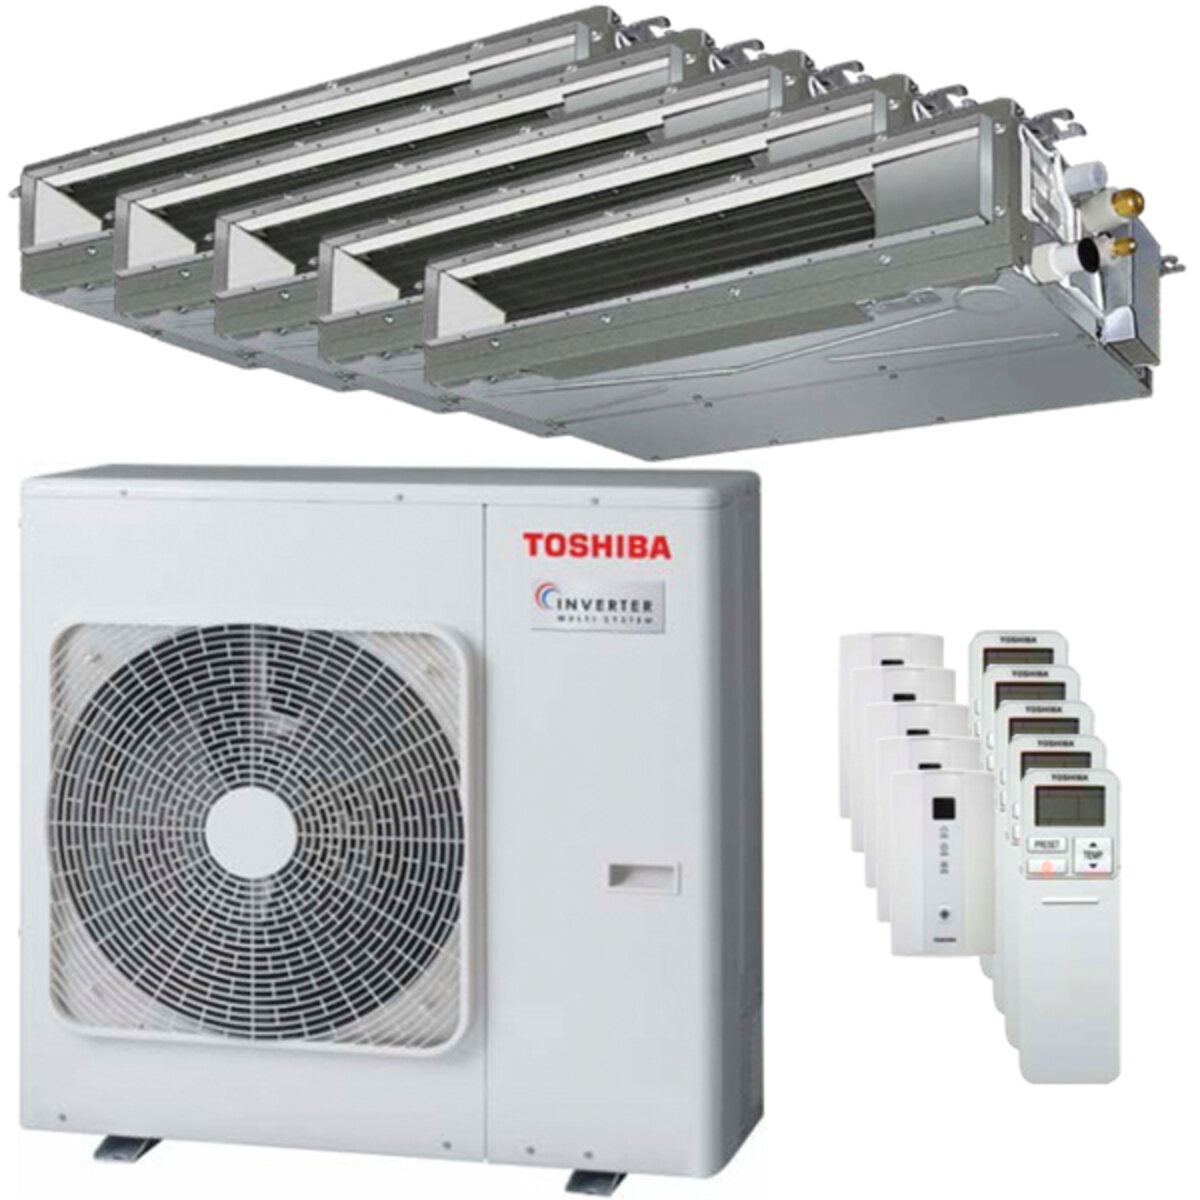 Toshiba Ductable Air Conditioner U2 penta split 7000 + 7000 + 7000 + 9000 + 9000 BTU inverter A++ unité extérieure 10,0 kW